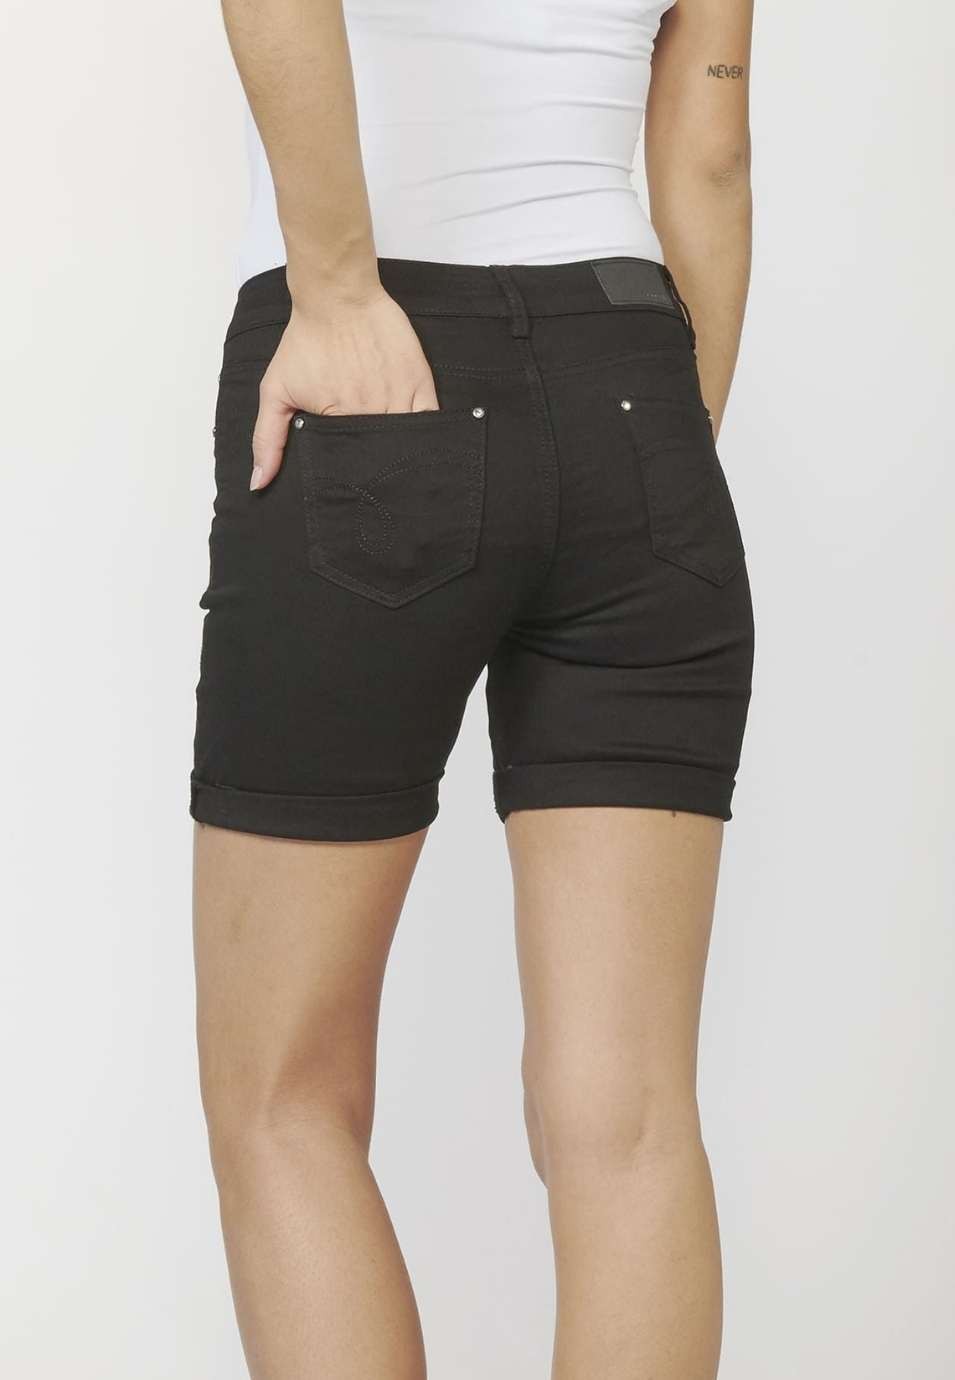 Pantalons curts Short amb Cinc Butxaques i Brodats Florals 100% Cotó per a Dona color Negre 2